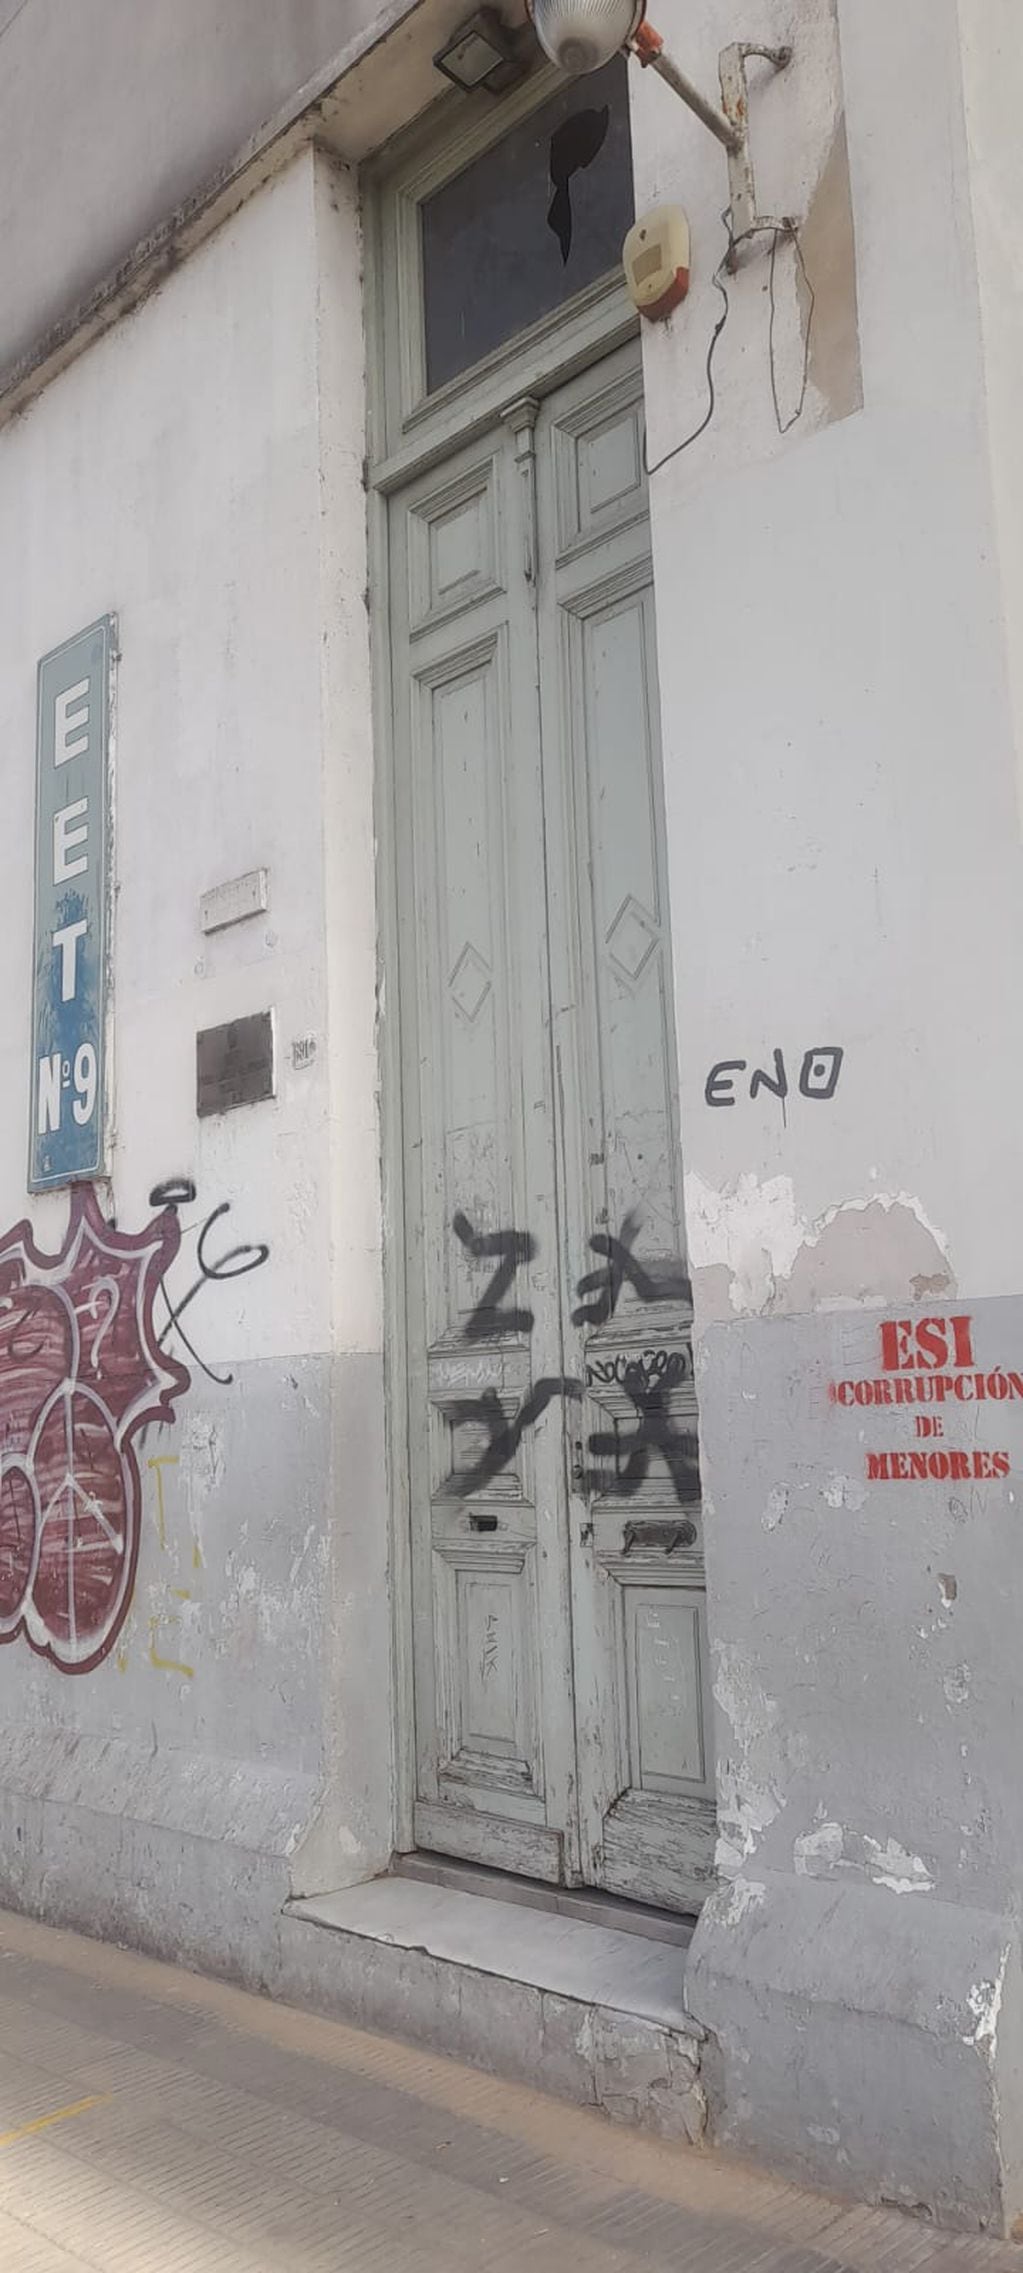 Pintadas contra la ESI en La Plata. Foto: X / @Mariadiazreck